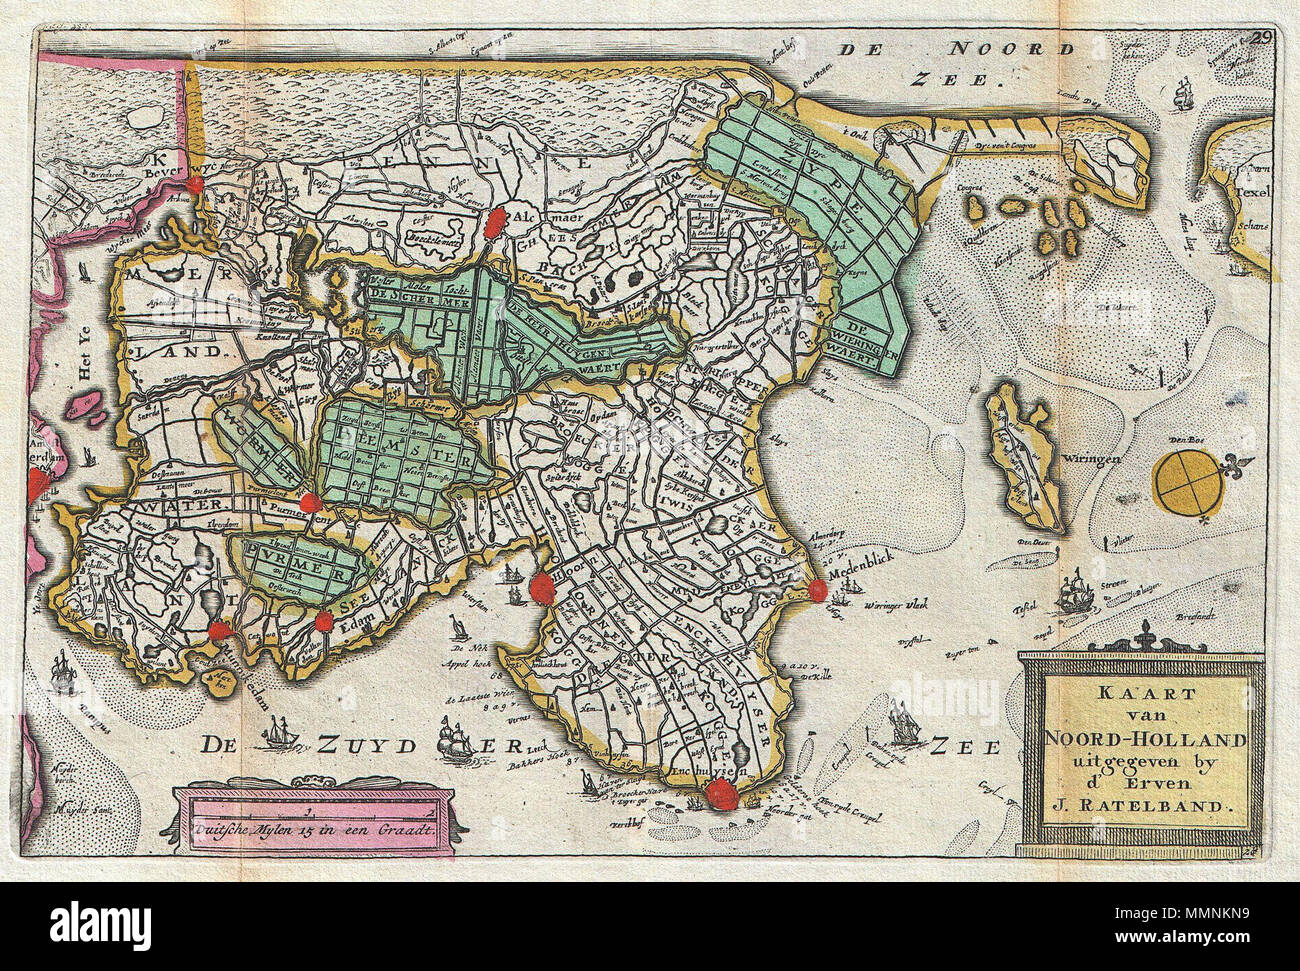 Anglais : une superbe carte de la partie nord de la Hollande ou les Pays-Bas  premier dessiné par Daniel de la feuille en 1706. Orienté vers l'ouest.  Couvre d'Amsterdam, à l'extrême